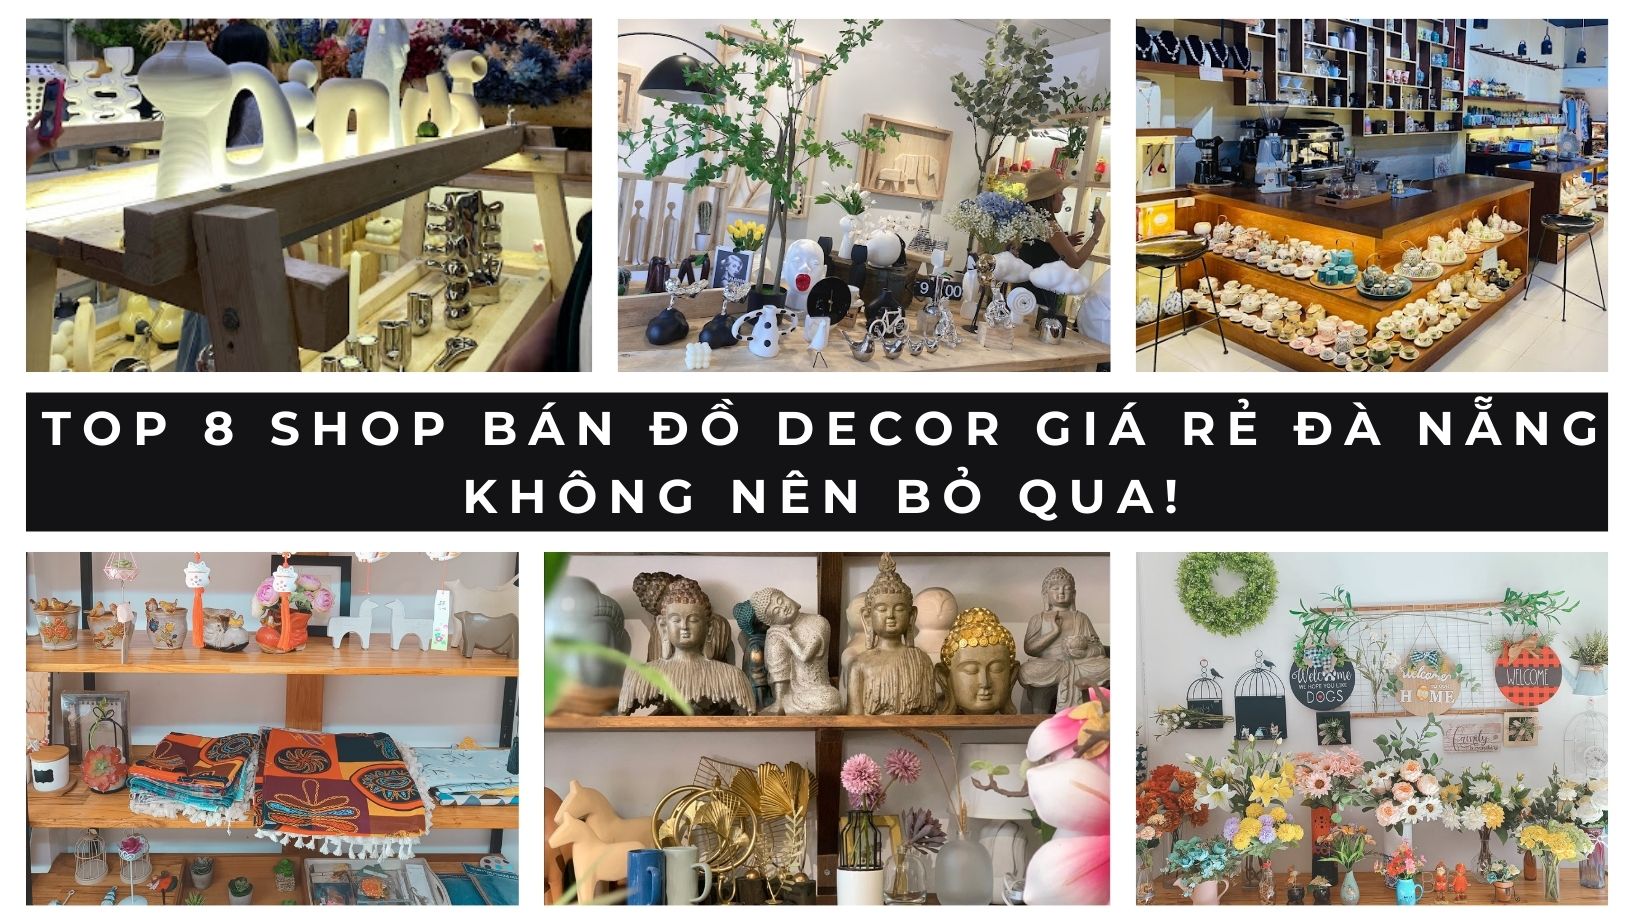 Top 8 shop bán đồ decor giá rẻ Đà Nẵng không nên bỏ qua!